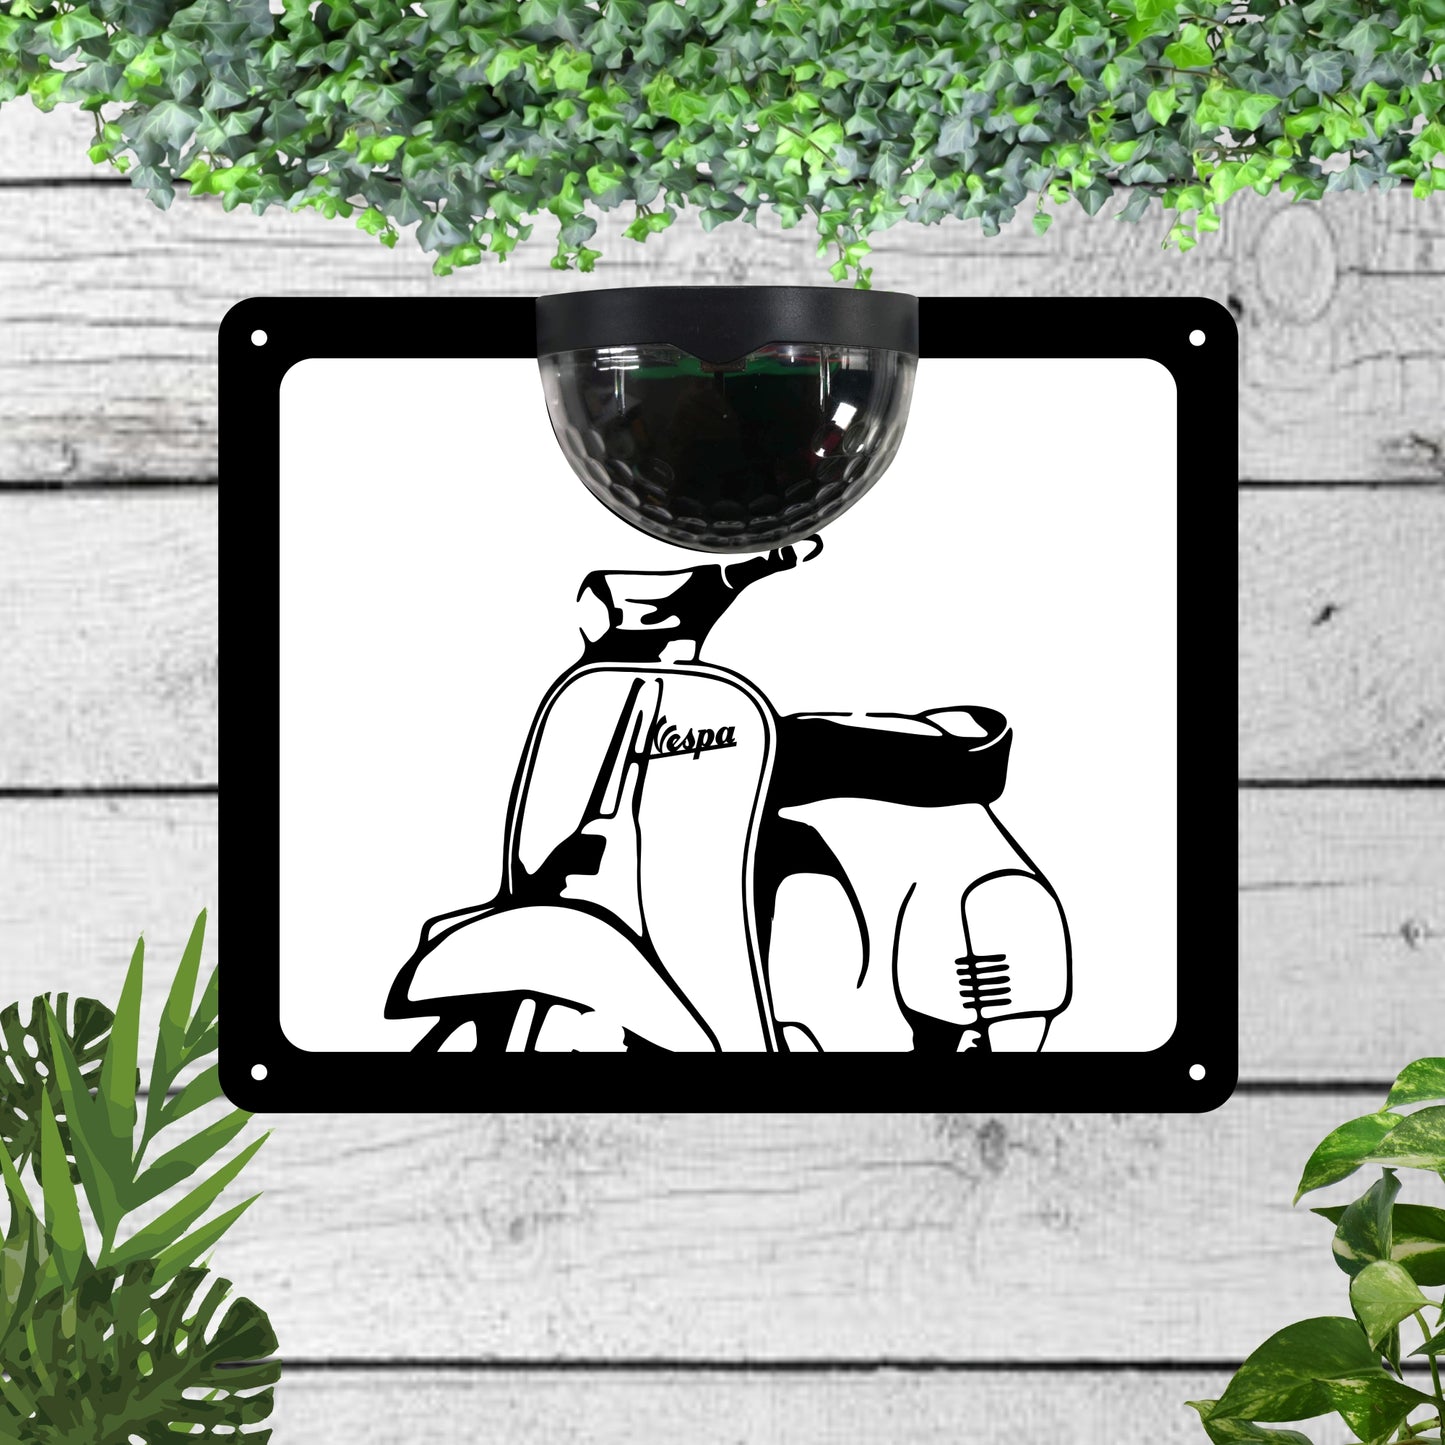 Garden Solar Light Wall Plaque featuring a scooter | John Alans